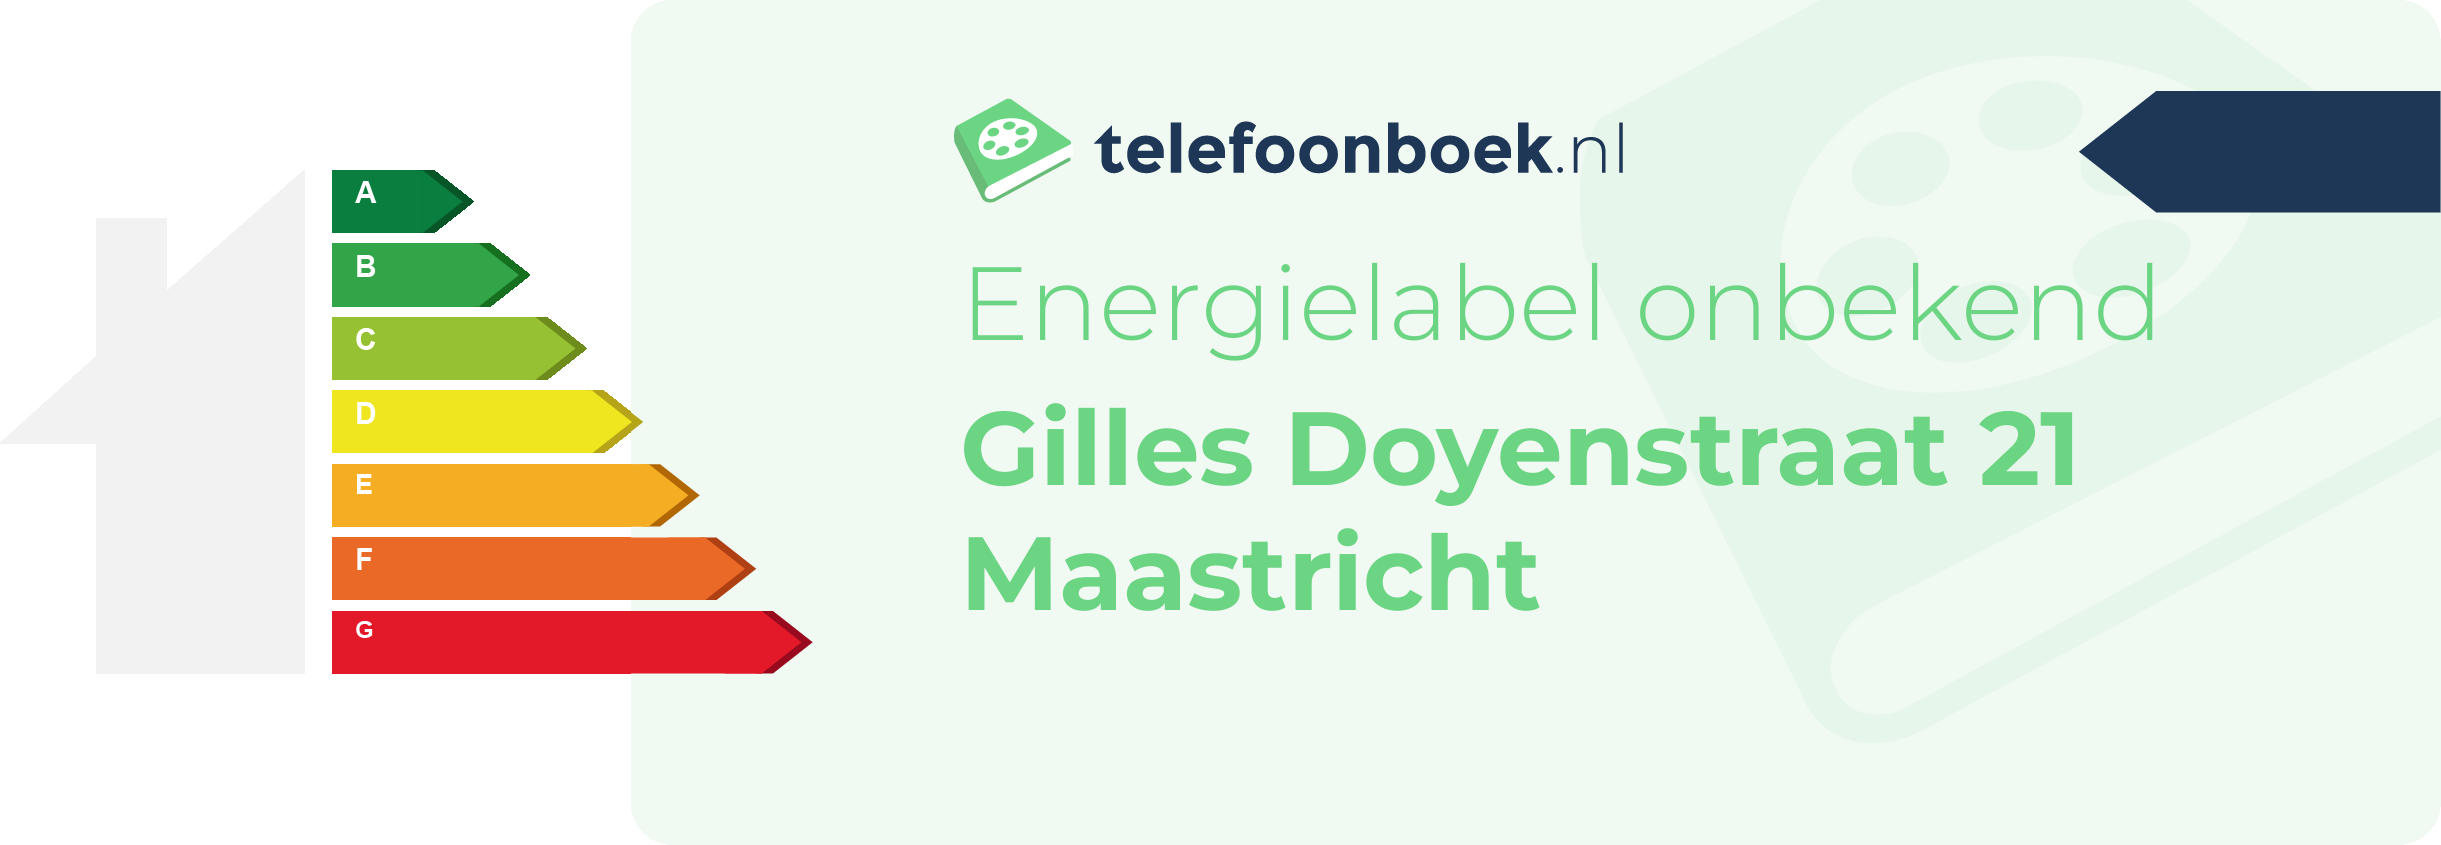 Energielabel Gilles Doyenstraat 21 Maastricht